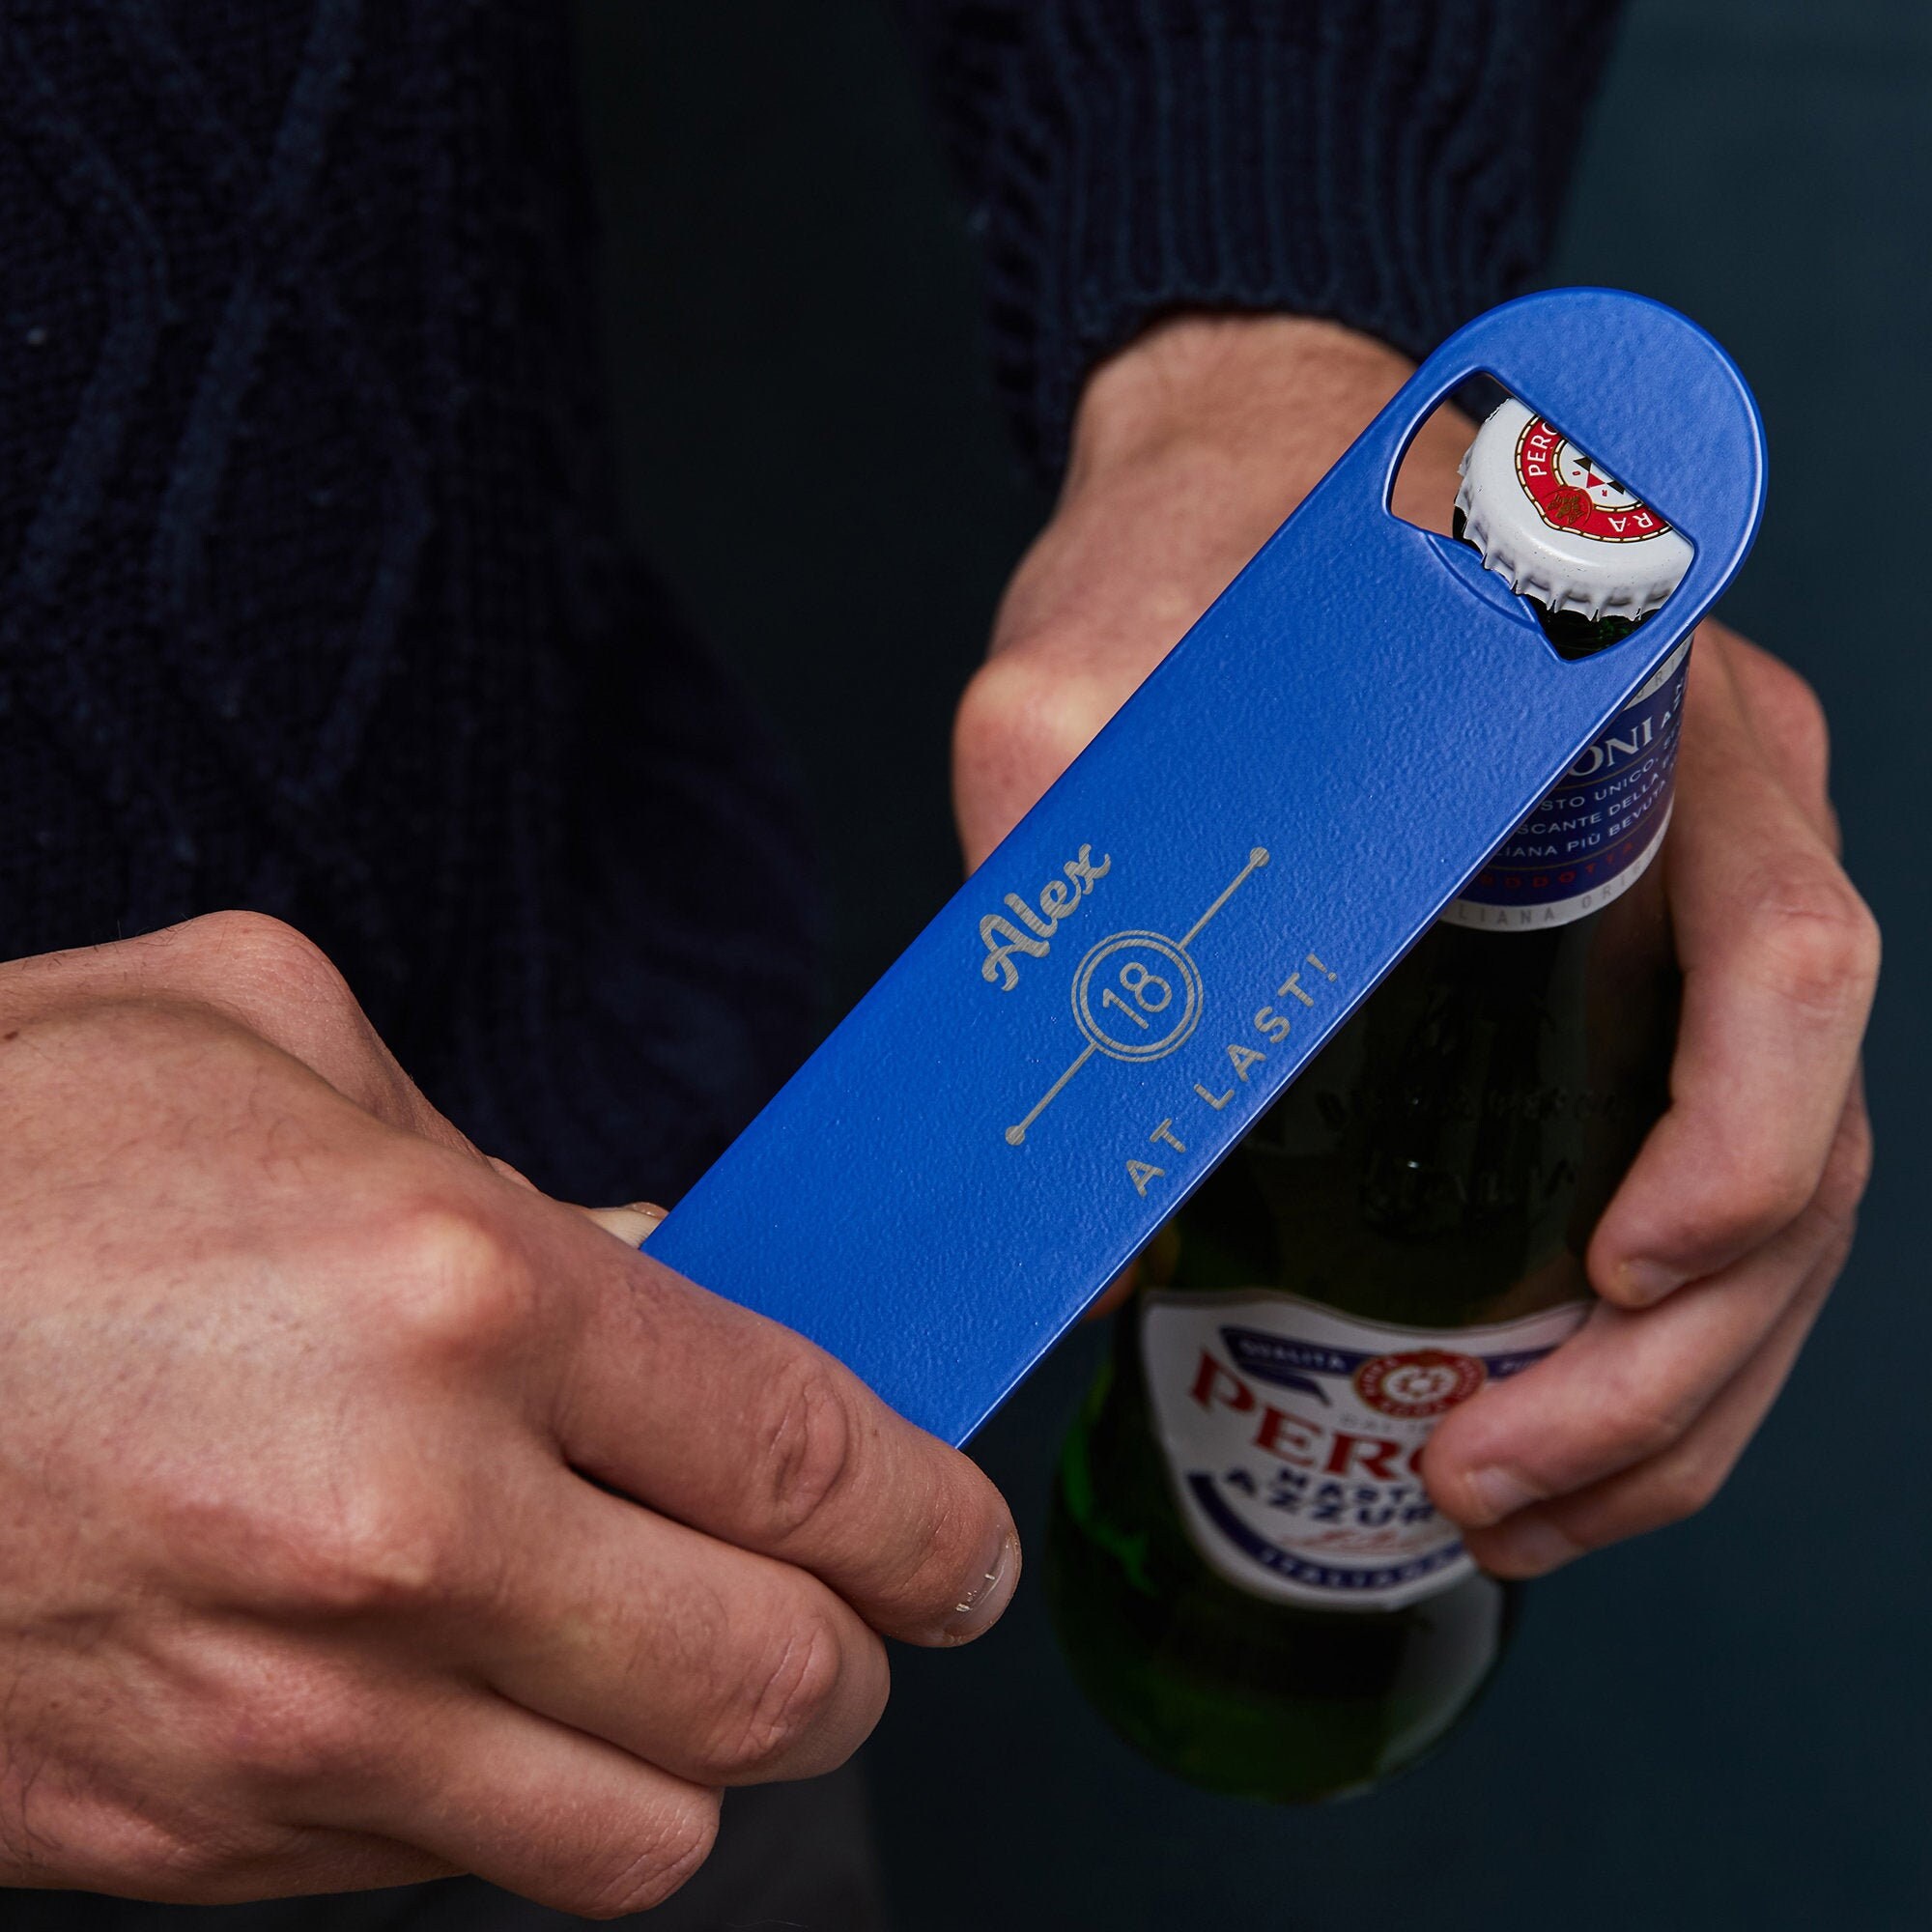 Vejrudsigt emulering Produktionscenter Personalised Metal Bottle Opener Bar Blade Personalized - Etsy